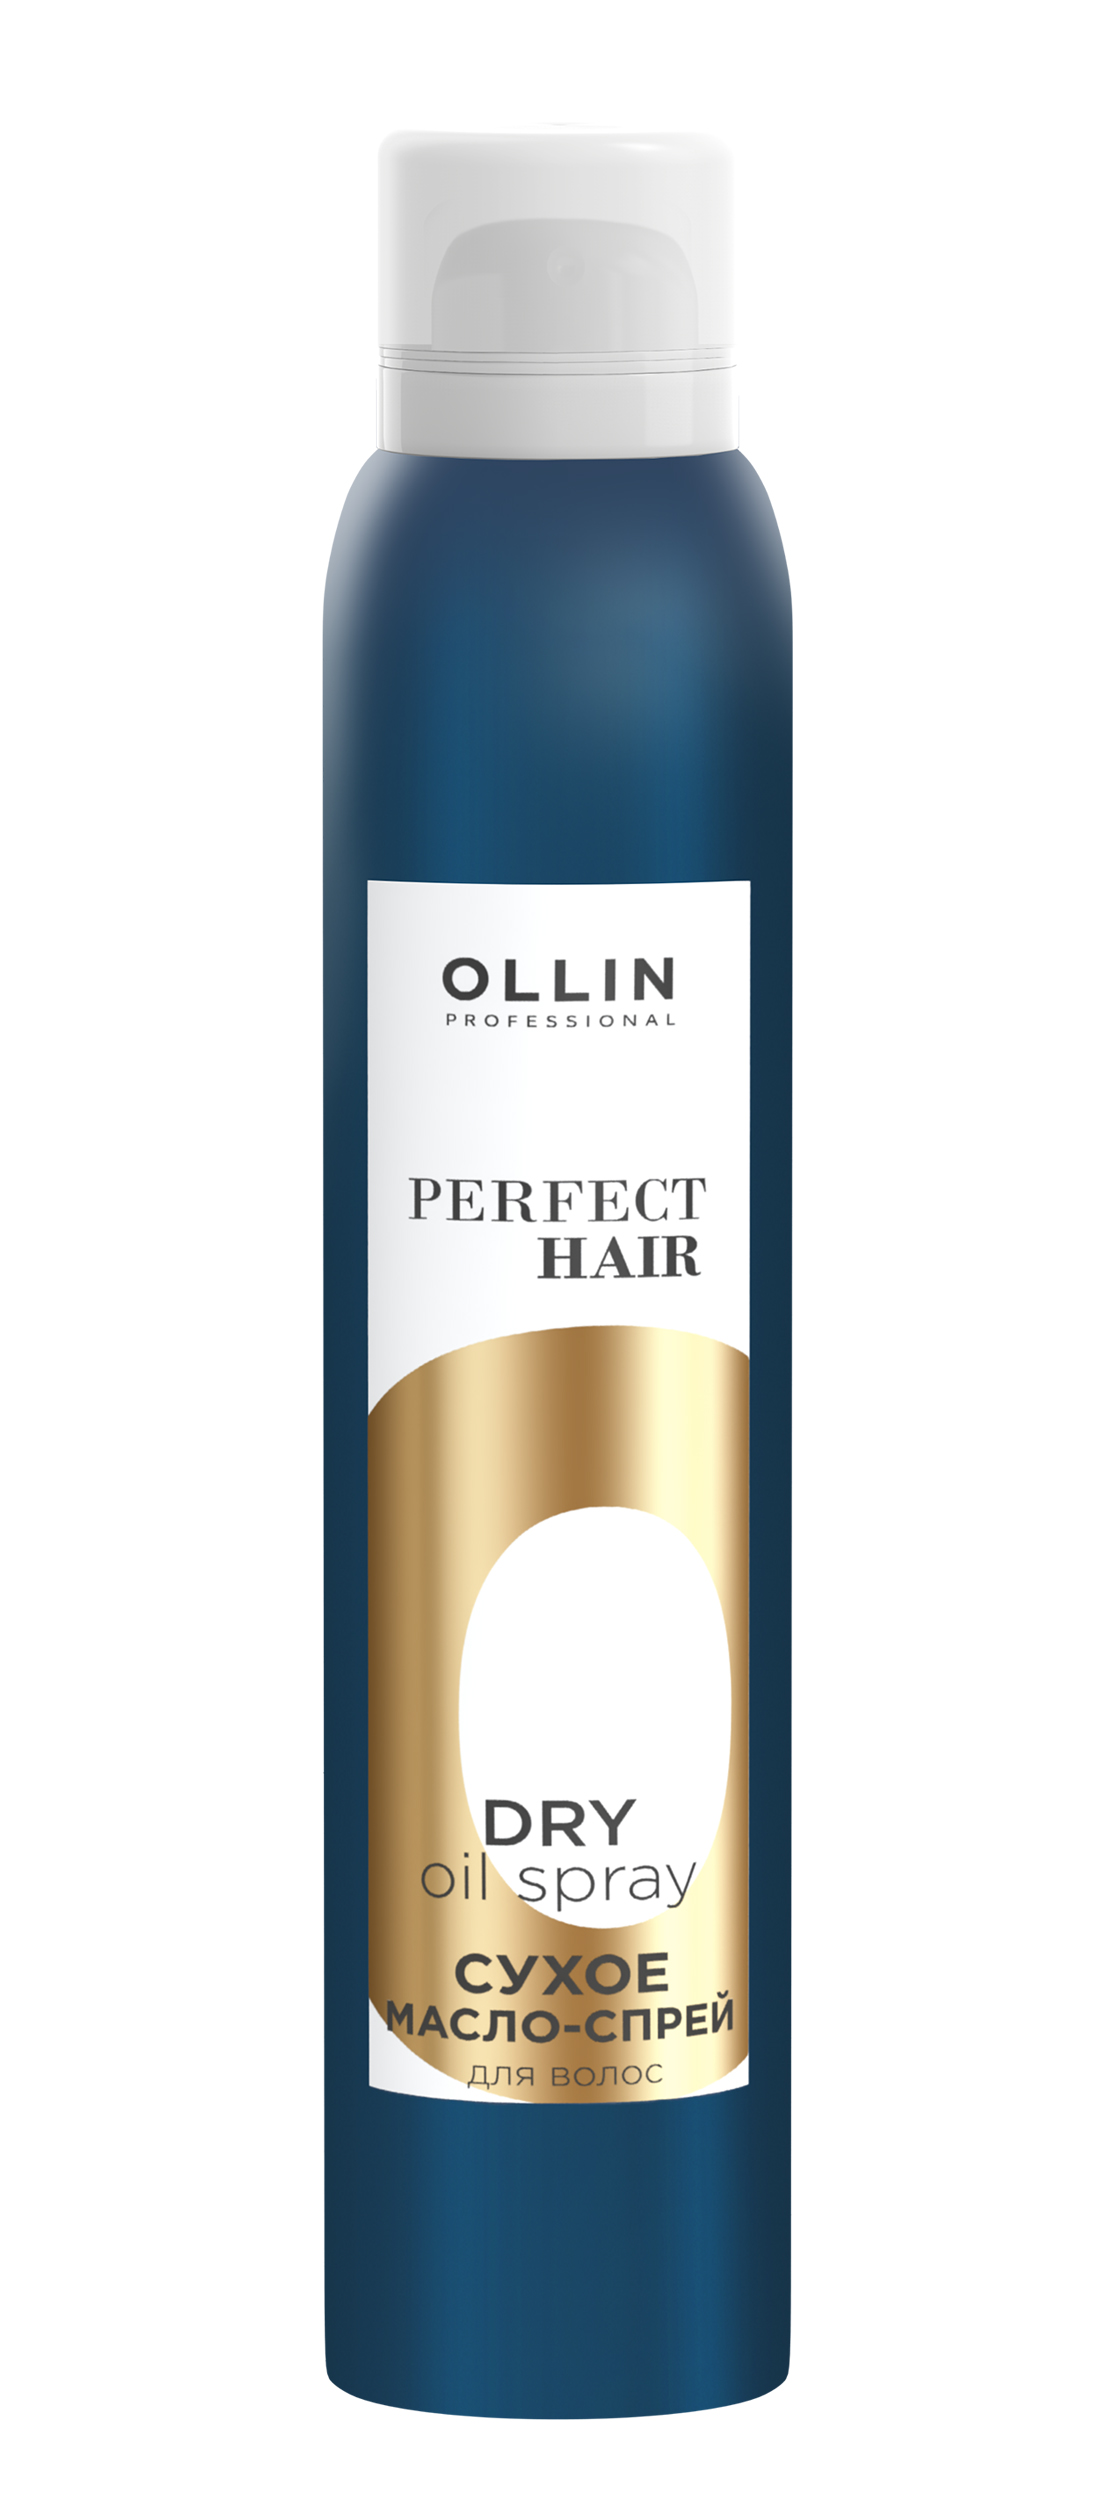 Сухое масло-спрей для волос OLLIN PERFECT HAIR, 200мл